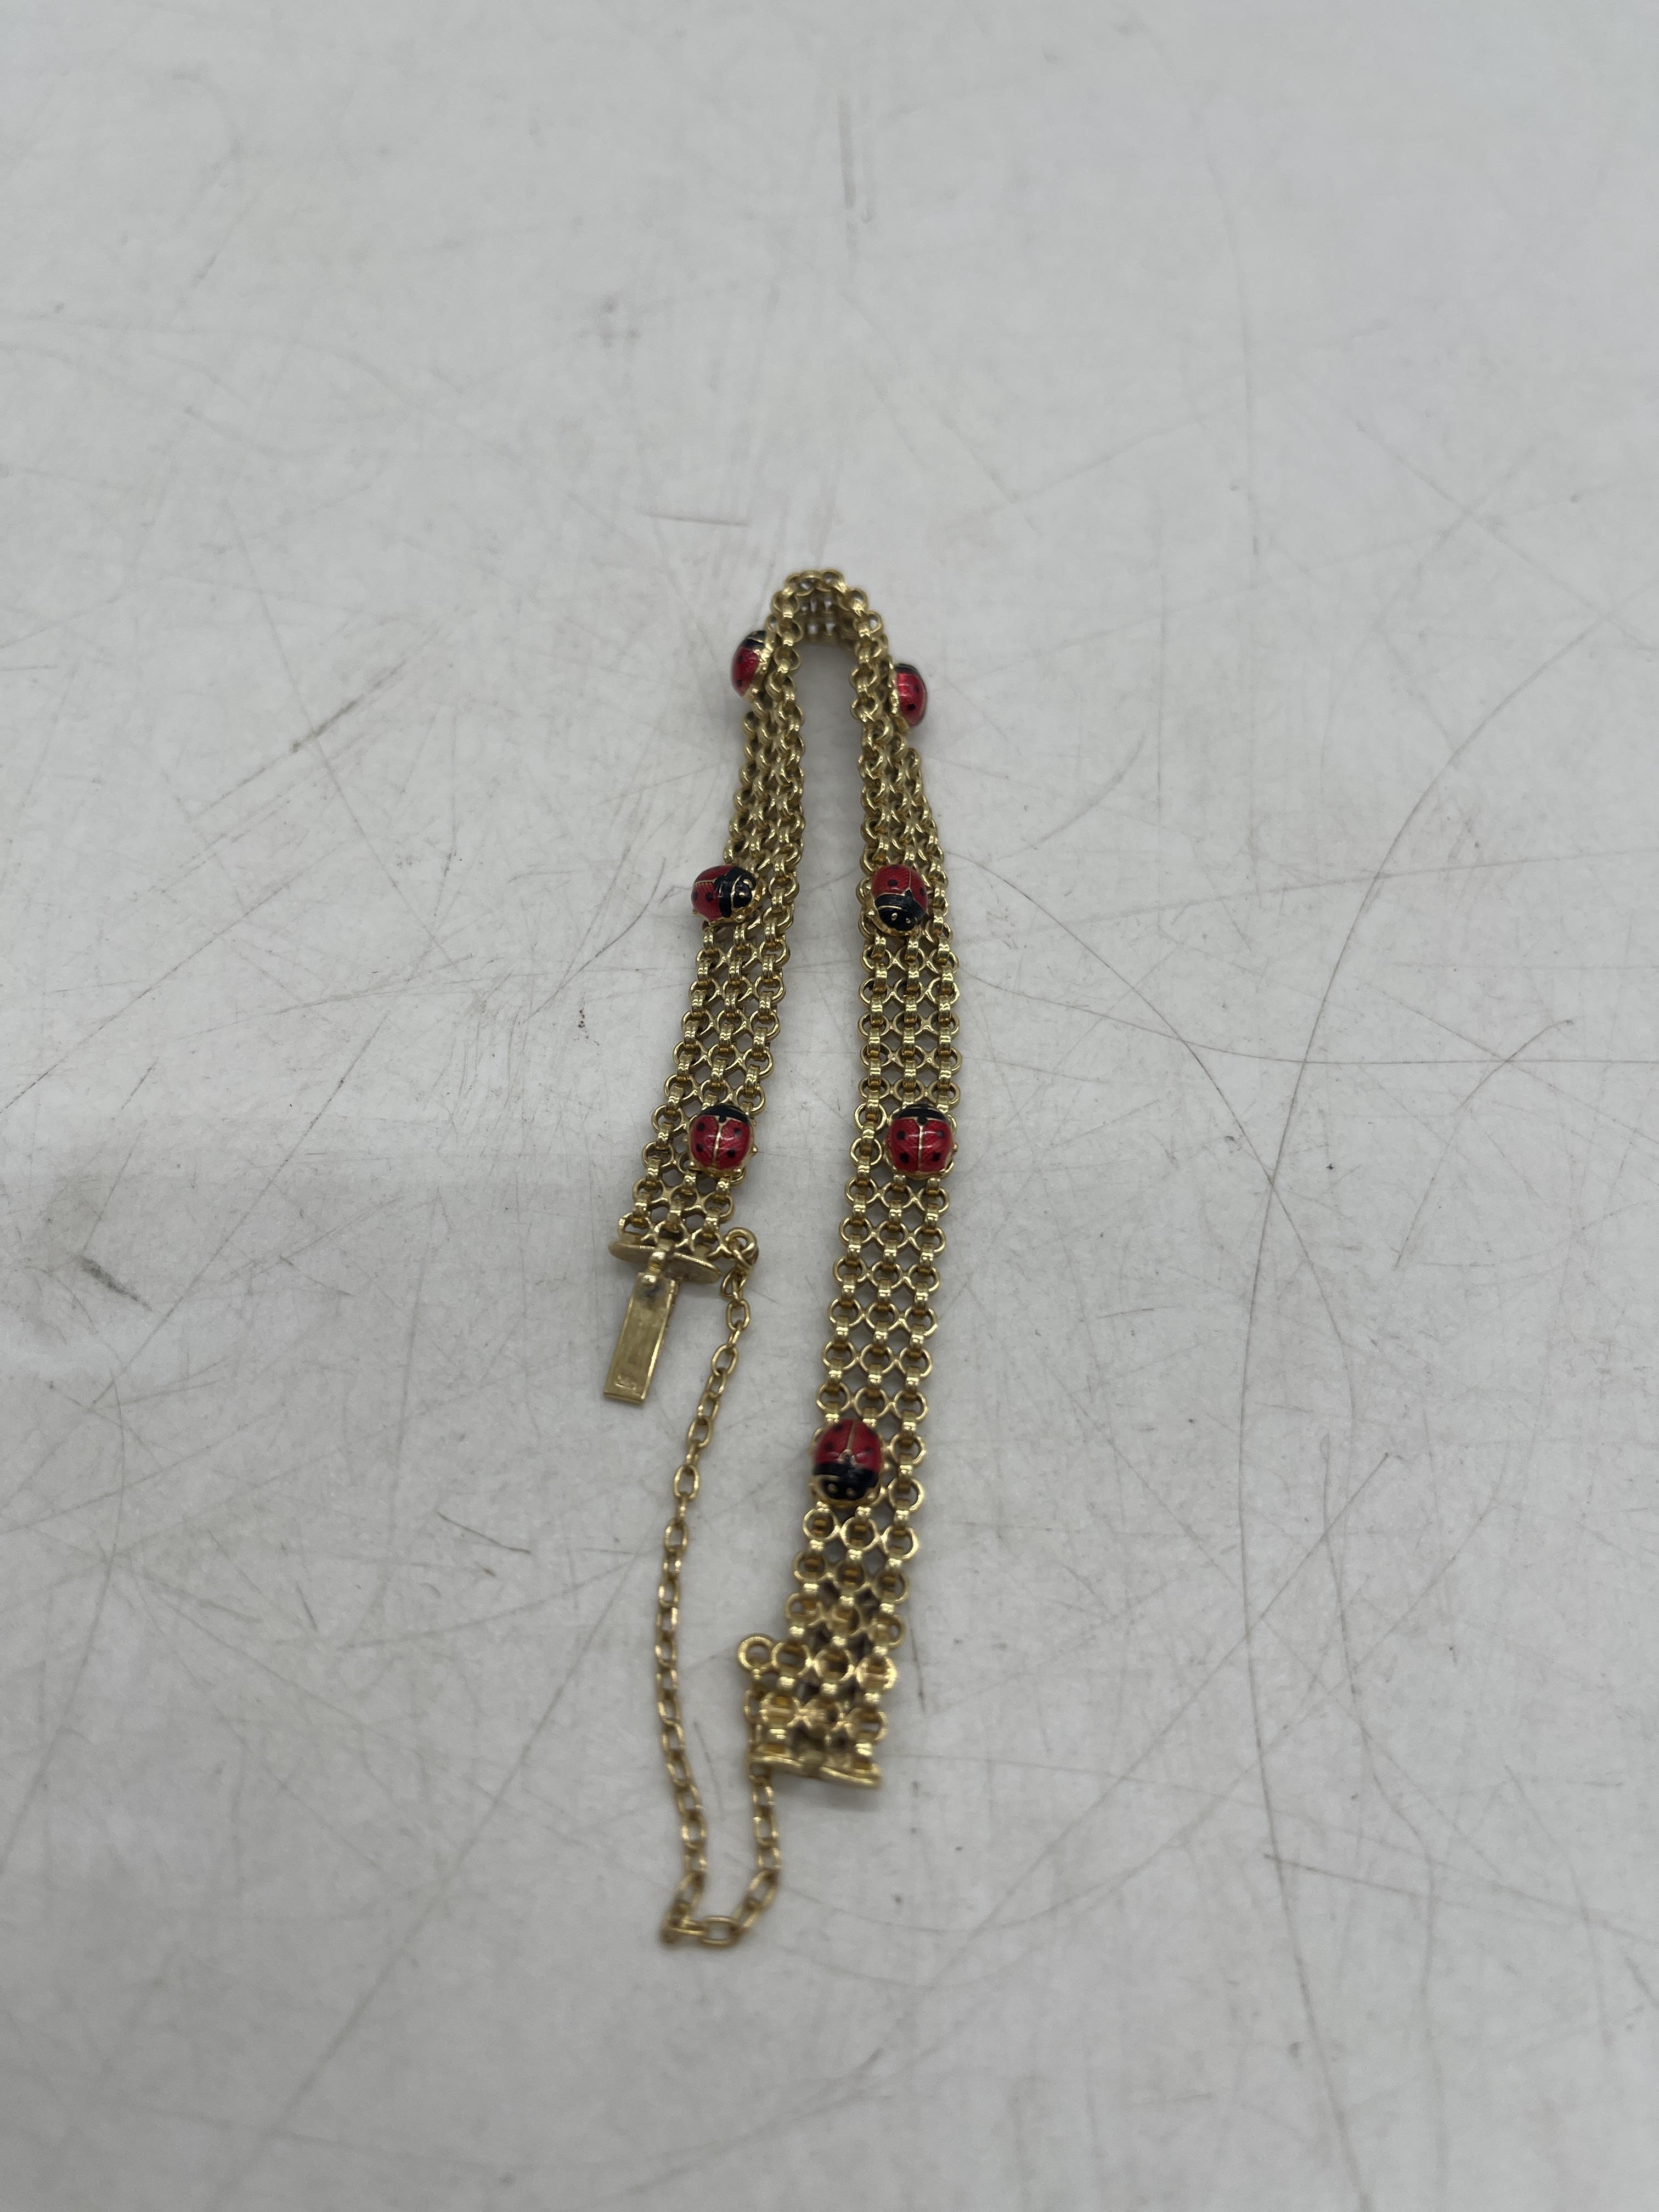 9ct Gold Ladybug Bracelet. - Image 2 of 6